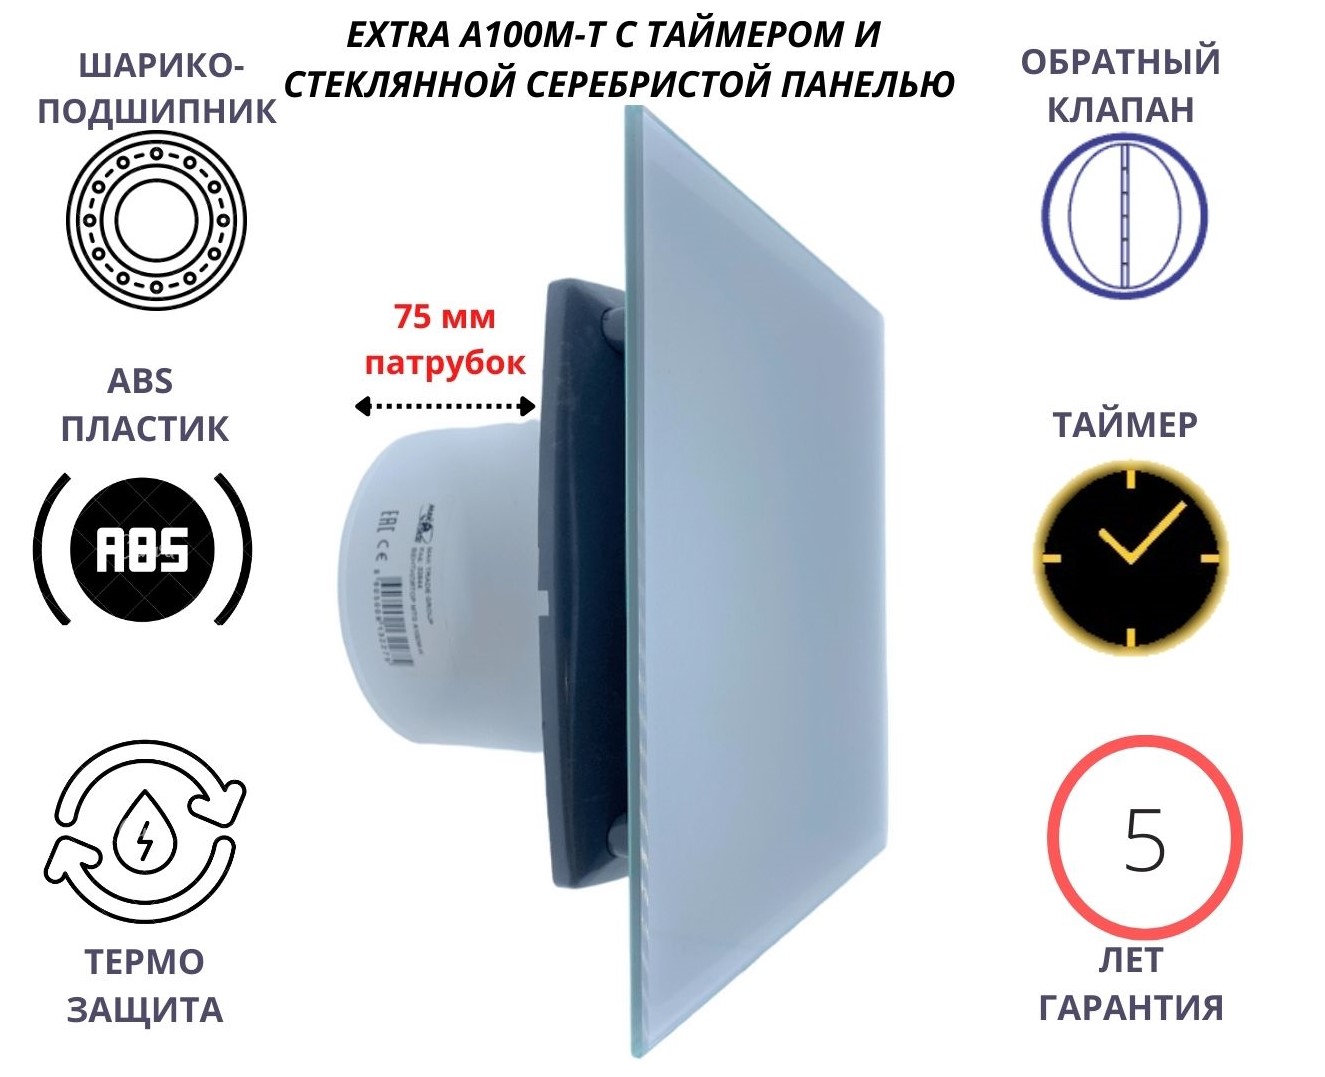 Вентилятор с таймером, D100мм, со стеклянной серебристой панелью EXTRA A100М-T, Сербия вентилятор mtg d100мм со стеклянной белой панелью и с обратным клапаном a100м k сербия